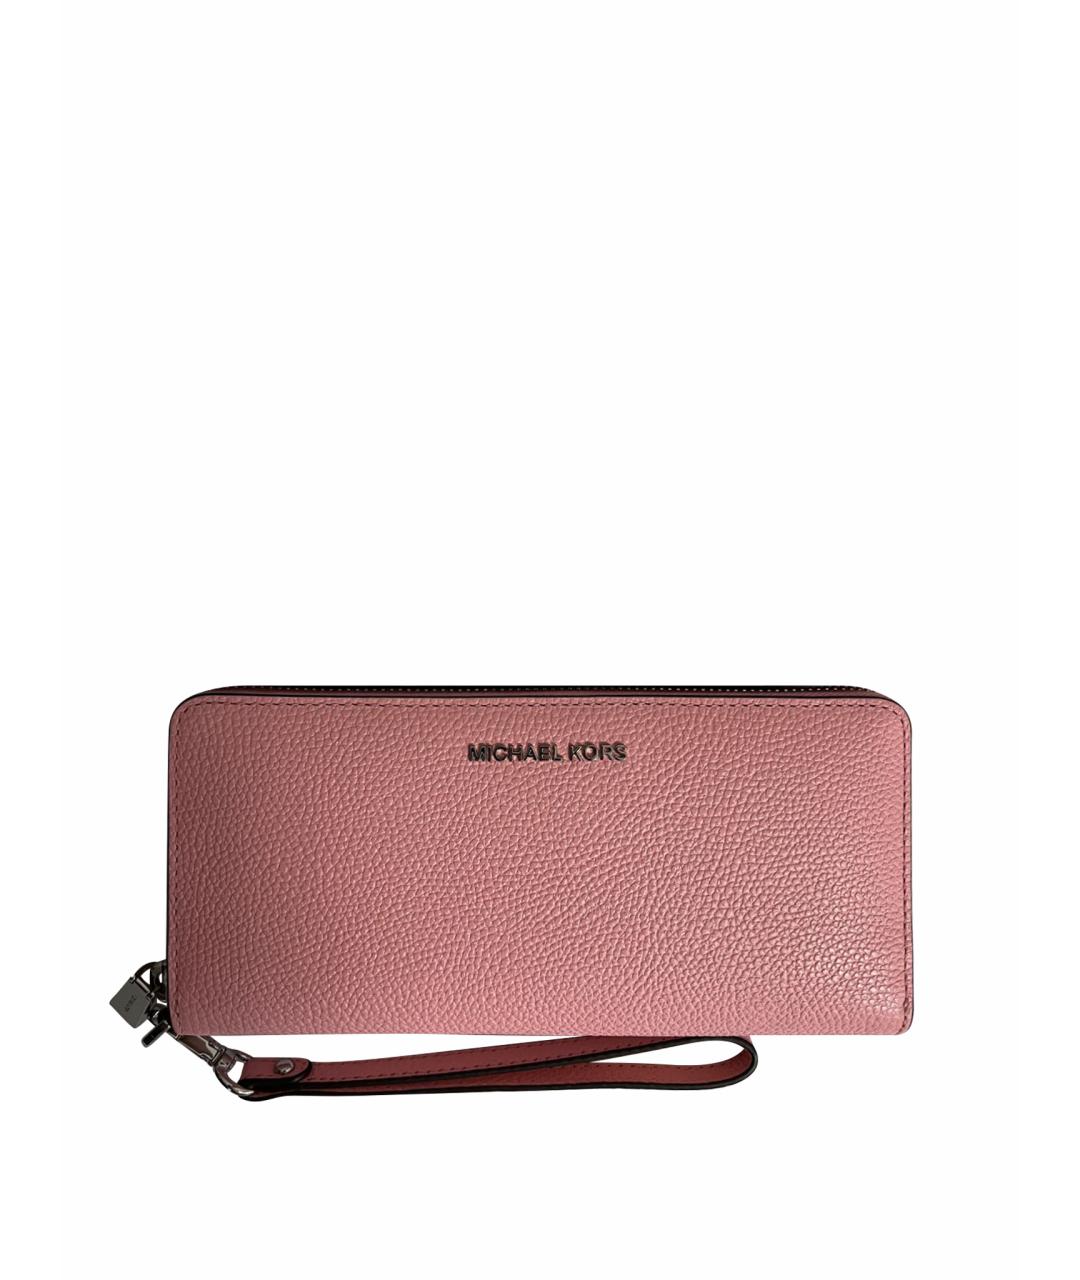 MICHAEL KORS Розовый кожаный кошелек, фото 1